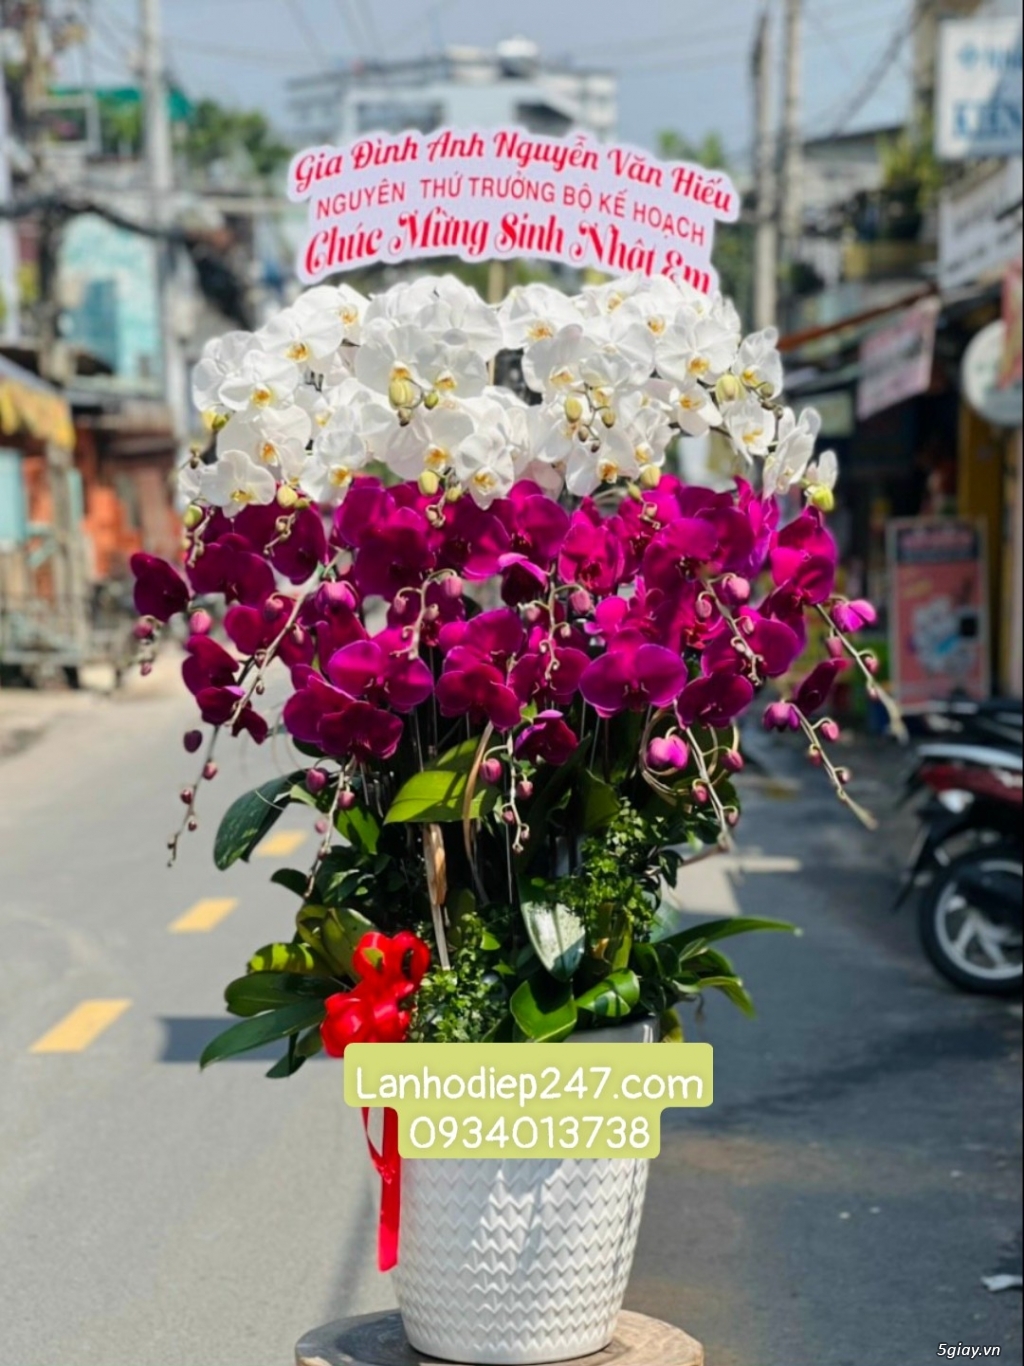 Shop hoa tươi tphcm chuyên bán lan hồ điệp đẹp cao cấp nhất sài gòn - 11